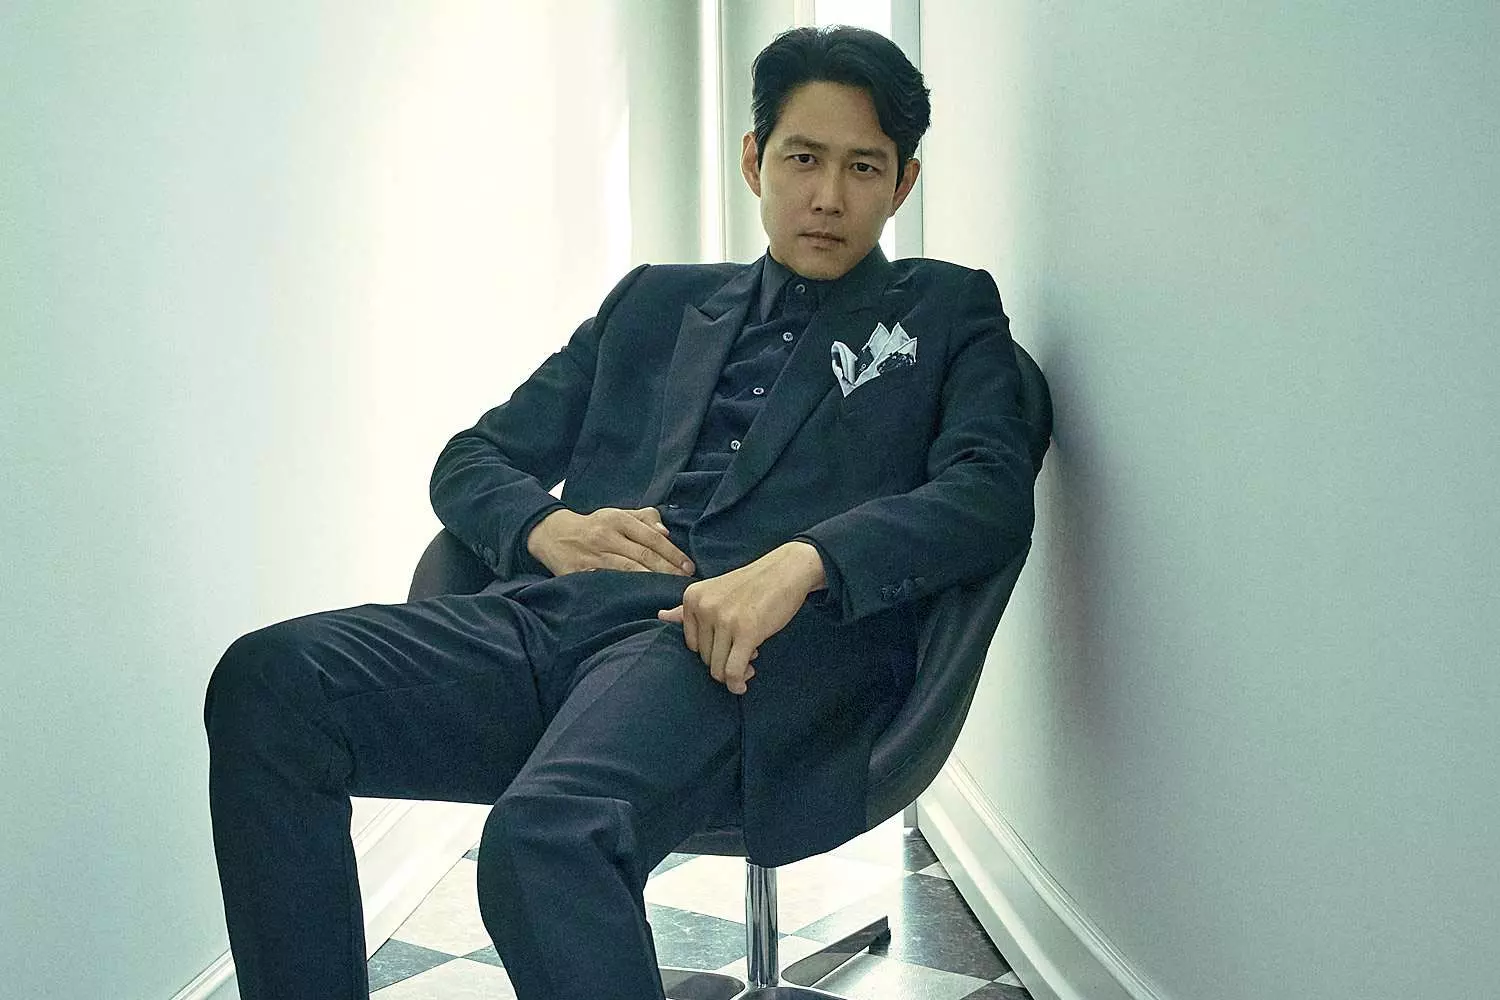 لی جونگ جه روی صندلی با کت و شلوار-بازیگر سریال بازی مرکب